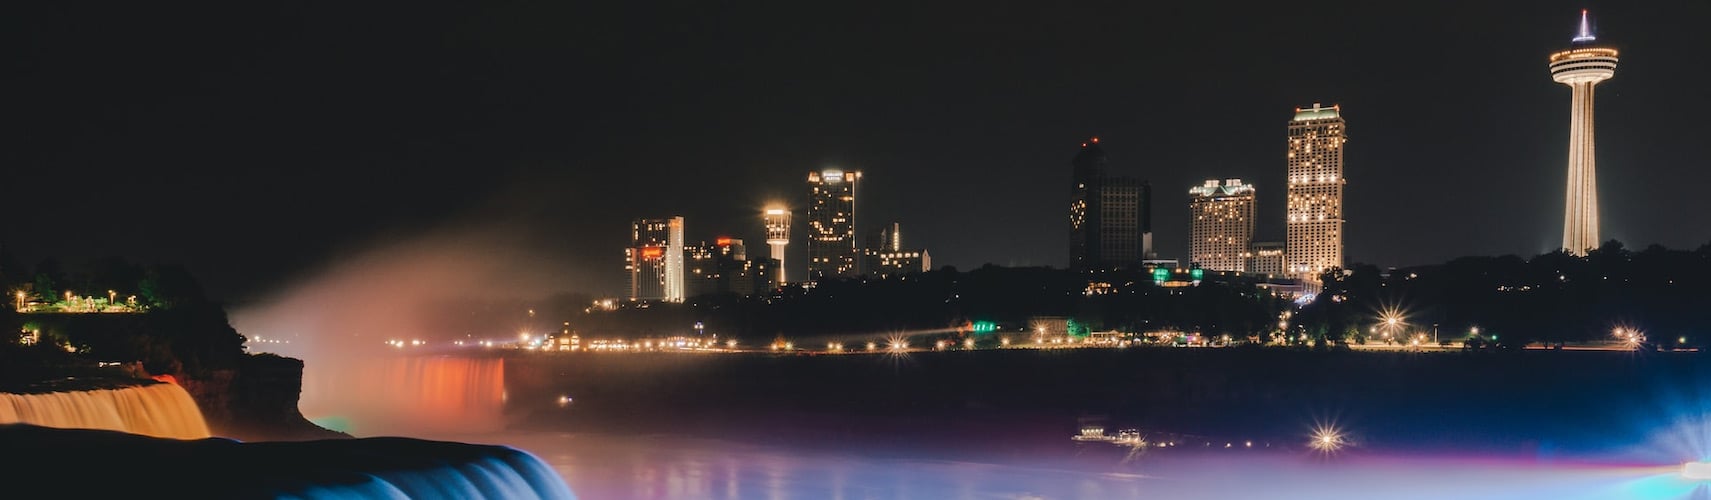 Cascate del Niagara di notte con lo skyline della città sullo sfondo